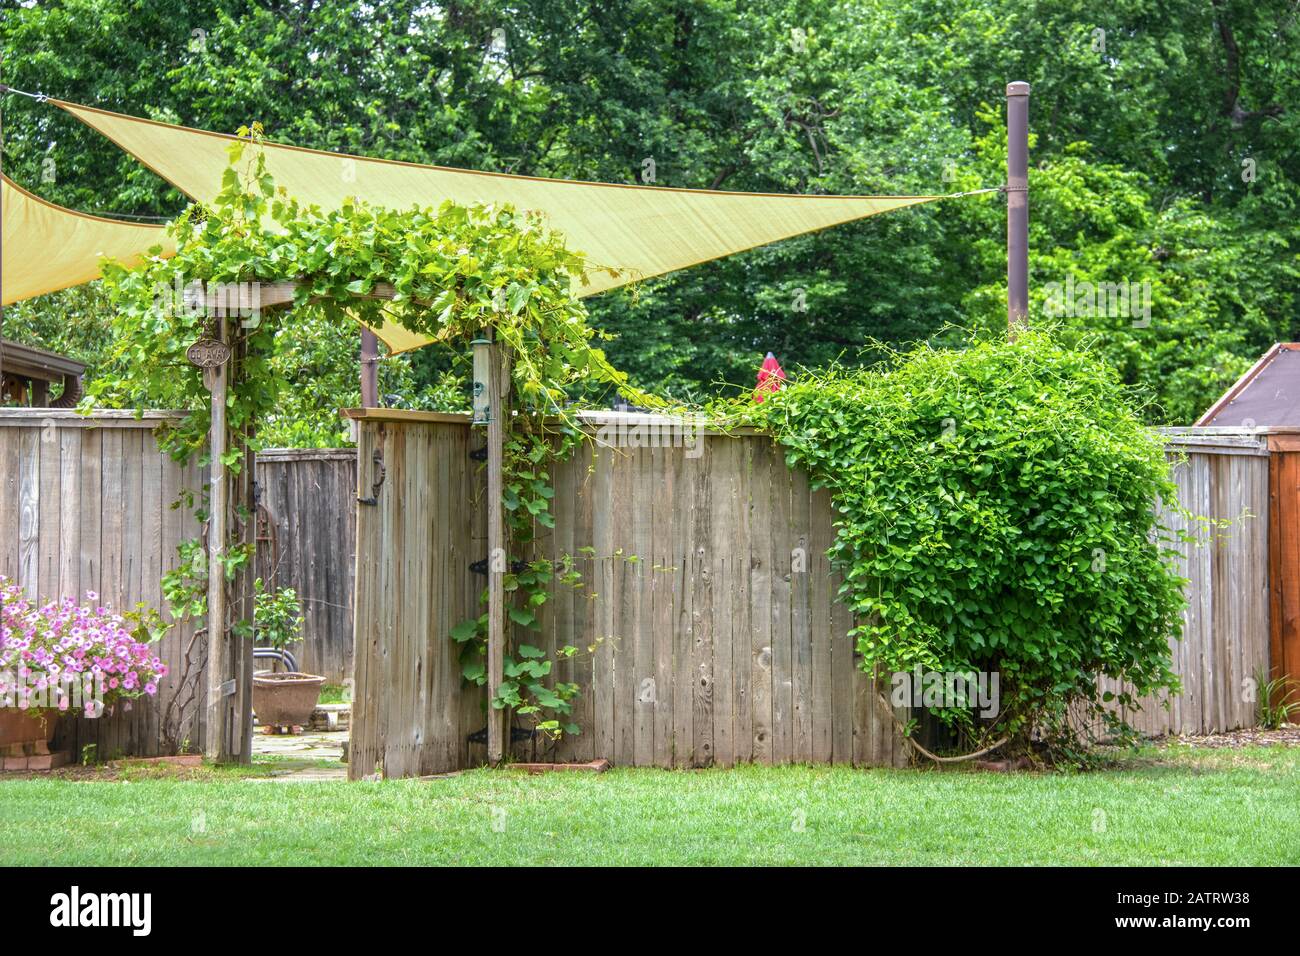 Garten- oder Partybereich mit Segel und einem Regenschirm hinter dem Privathauszaun mit offenem Tor mit Reben, die auf einem Trellis und auf rustikalem Zaun und Fluss wachsen Stockfoto